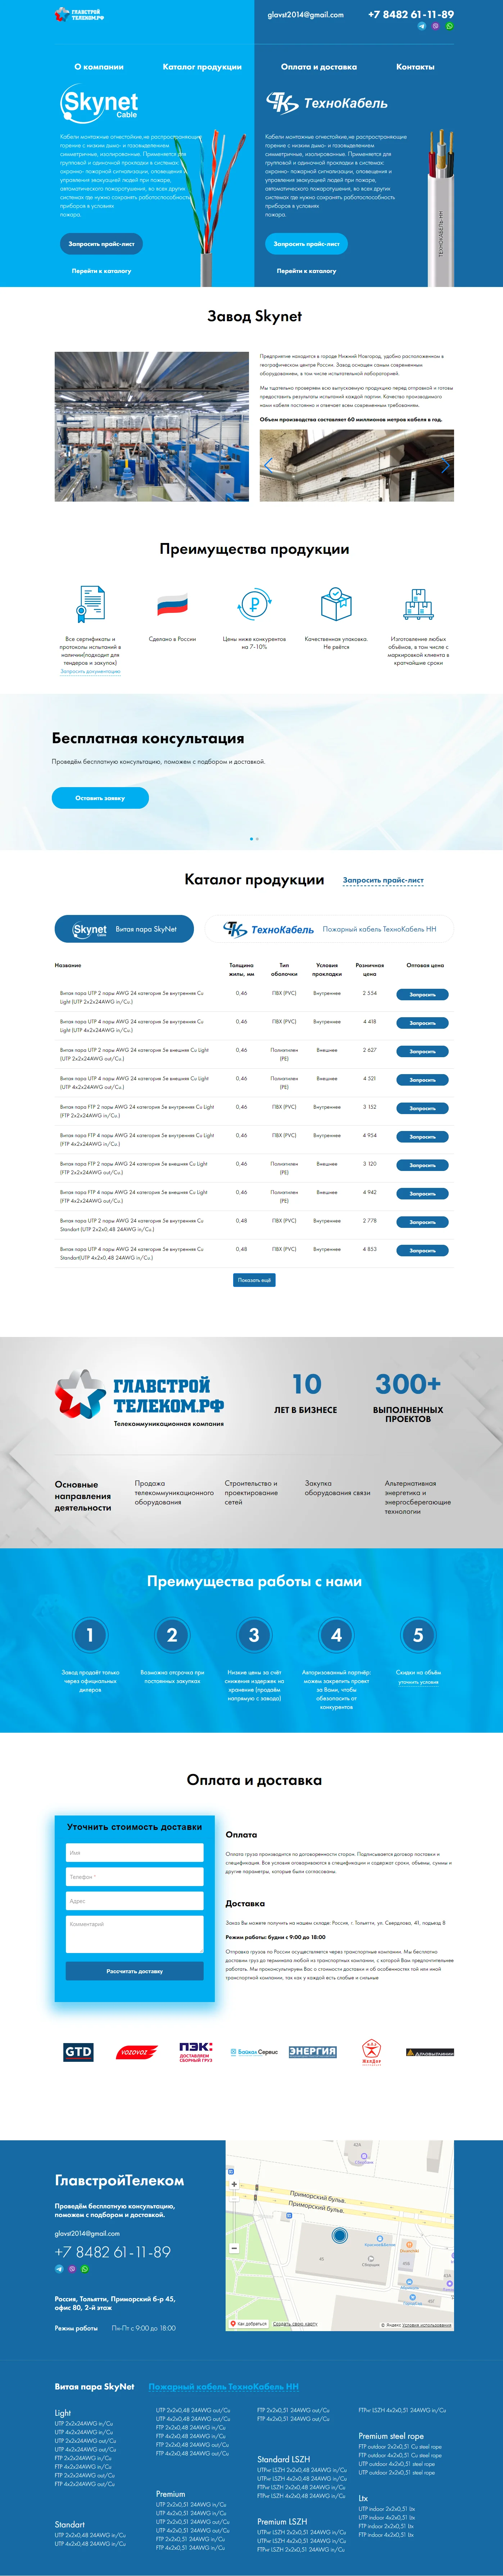 ГлавСтройТелеком - официальный партнер завода огнеупорного кабеля и витой пары SkyNet